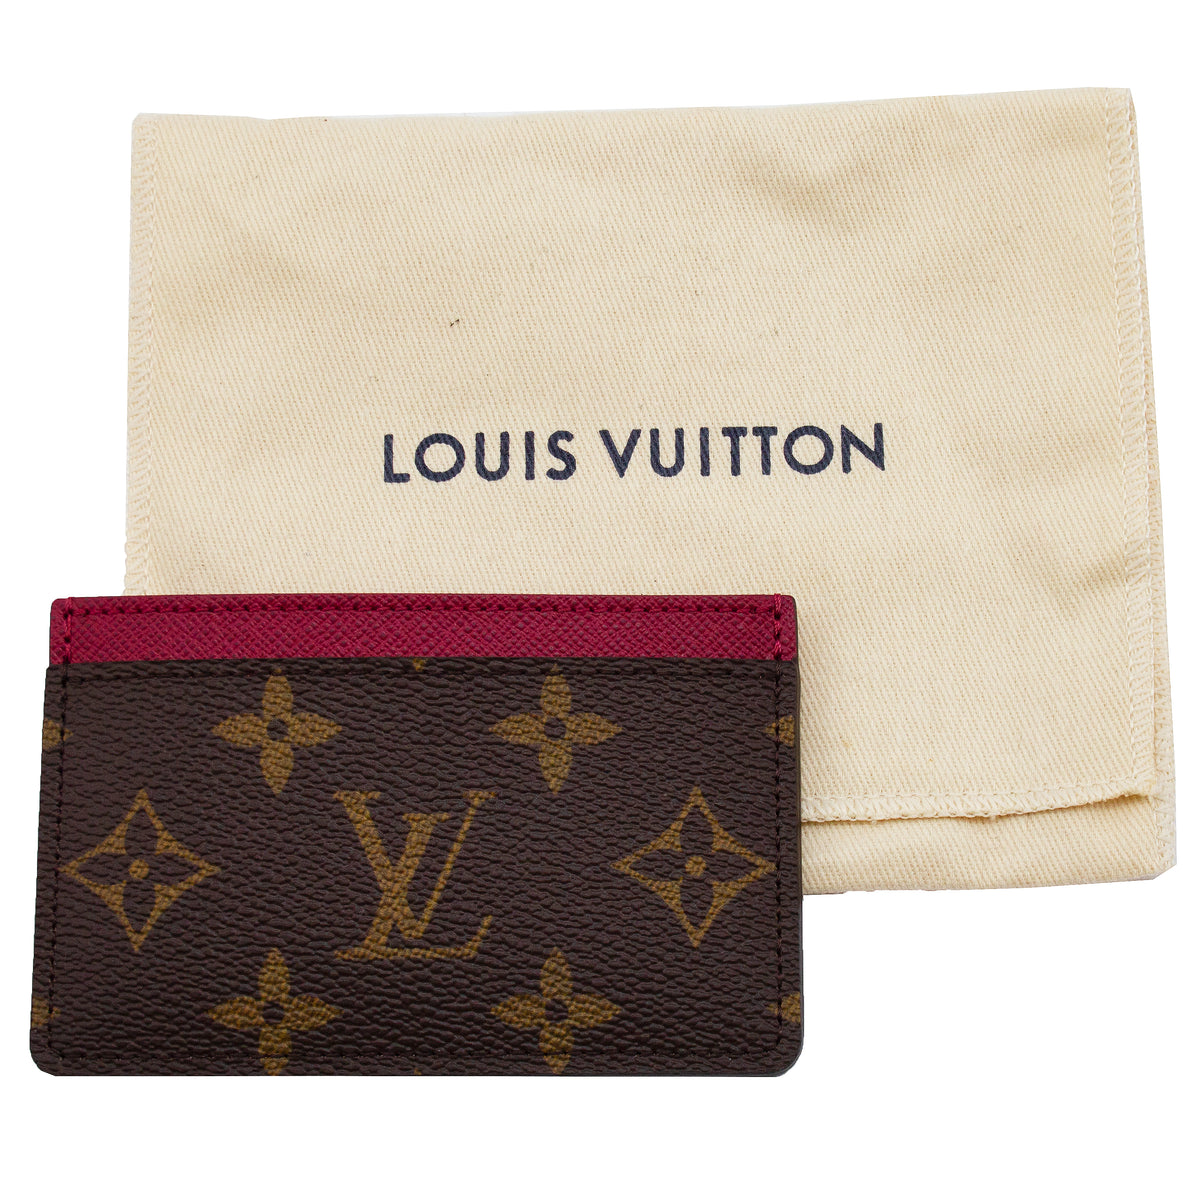 Louis Vuitton Card Slip Holder in Monogram Fuchsia - SOLD